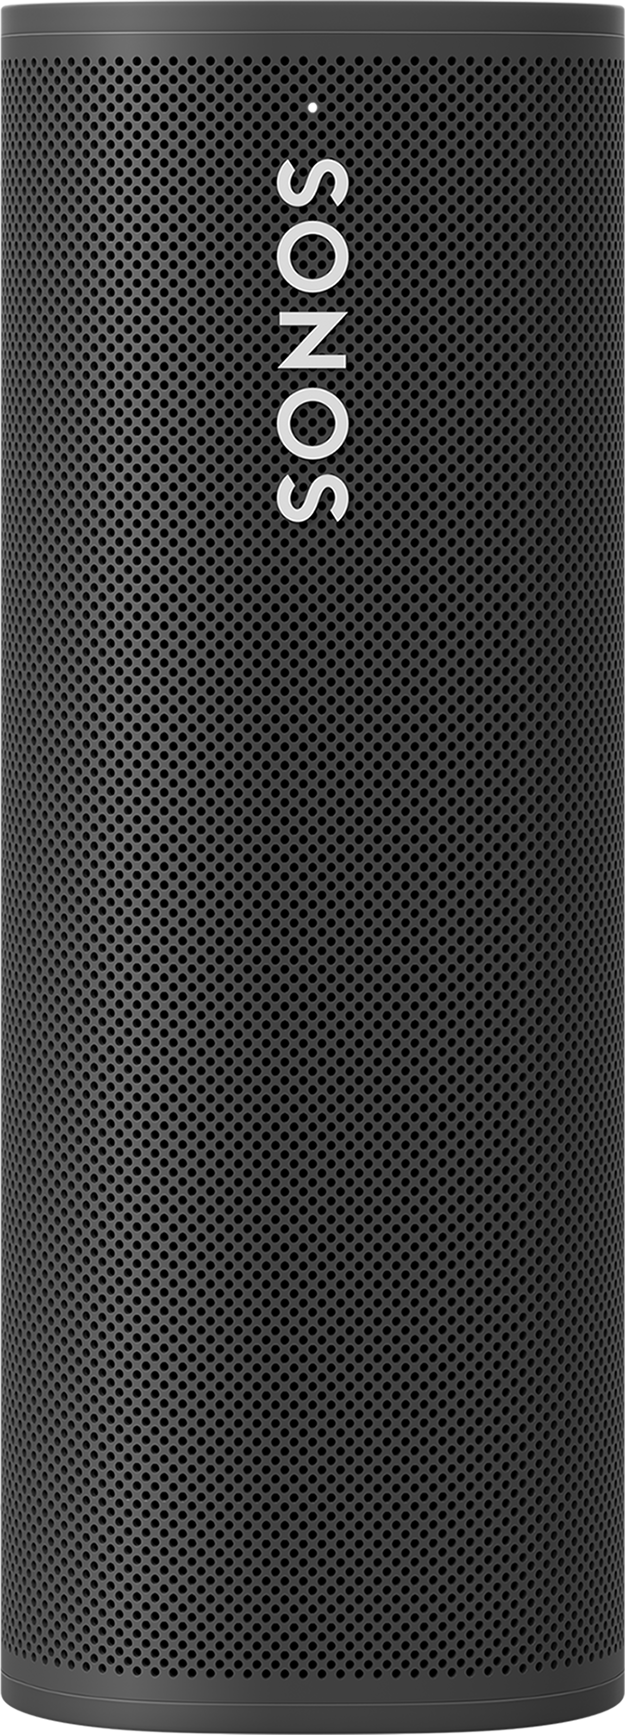 Bluetooth-speaker | MediaMarkt